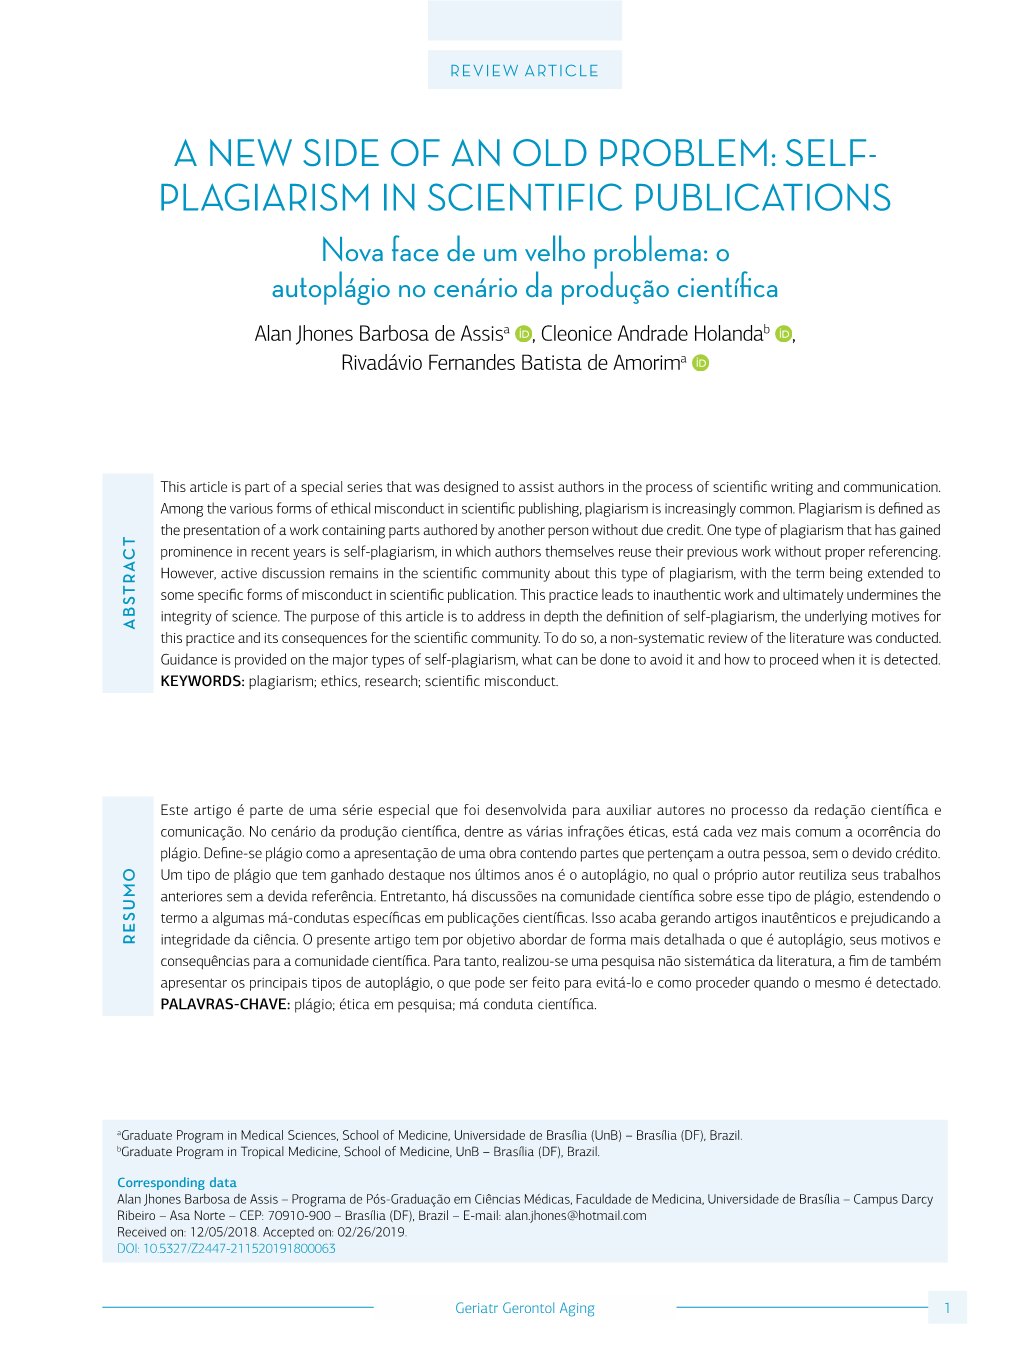 Self- Plagiarism in Scientific Publications